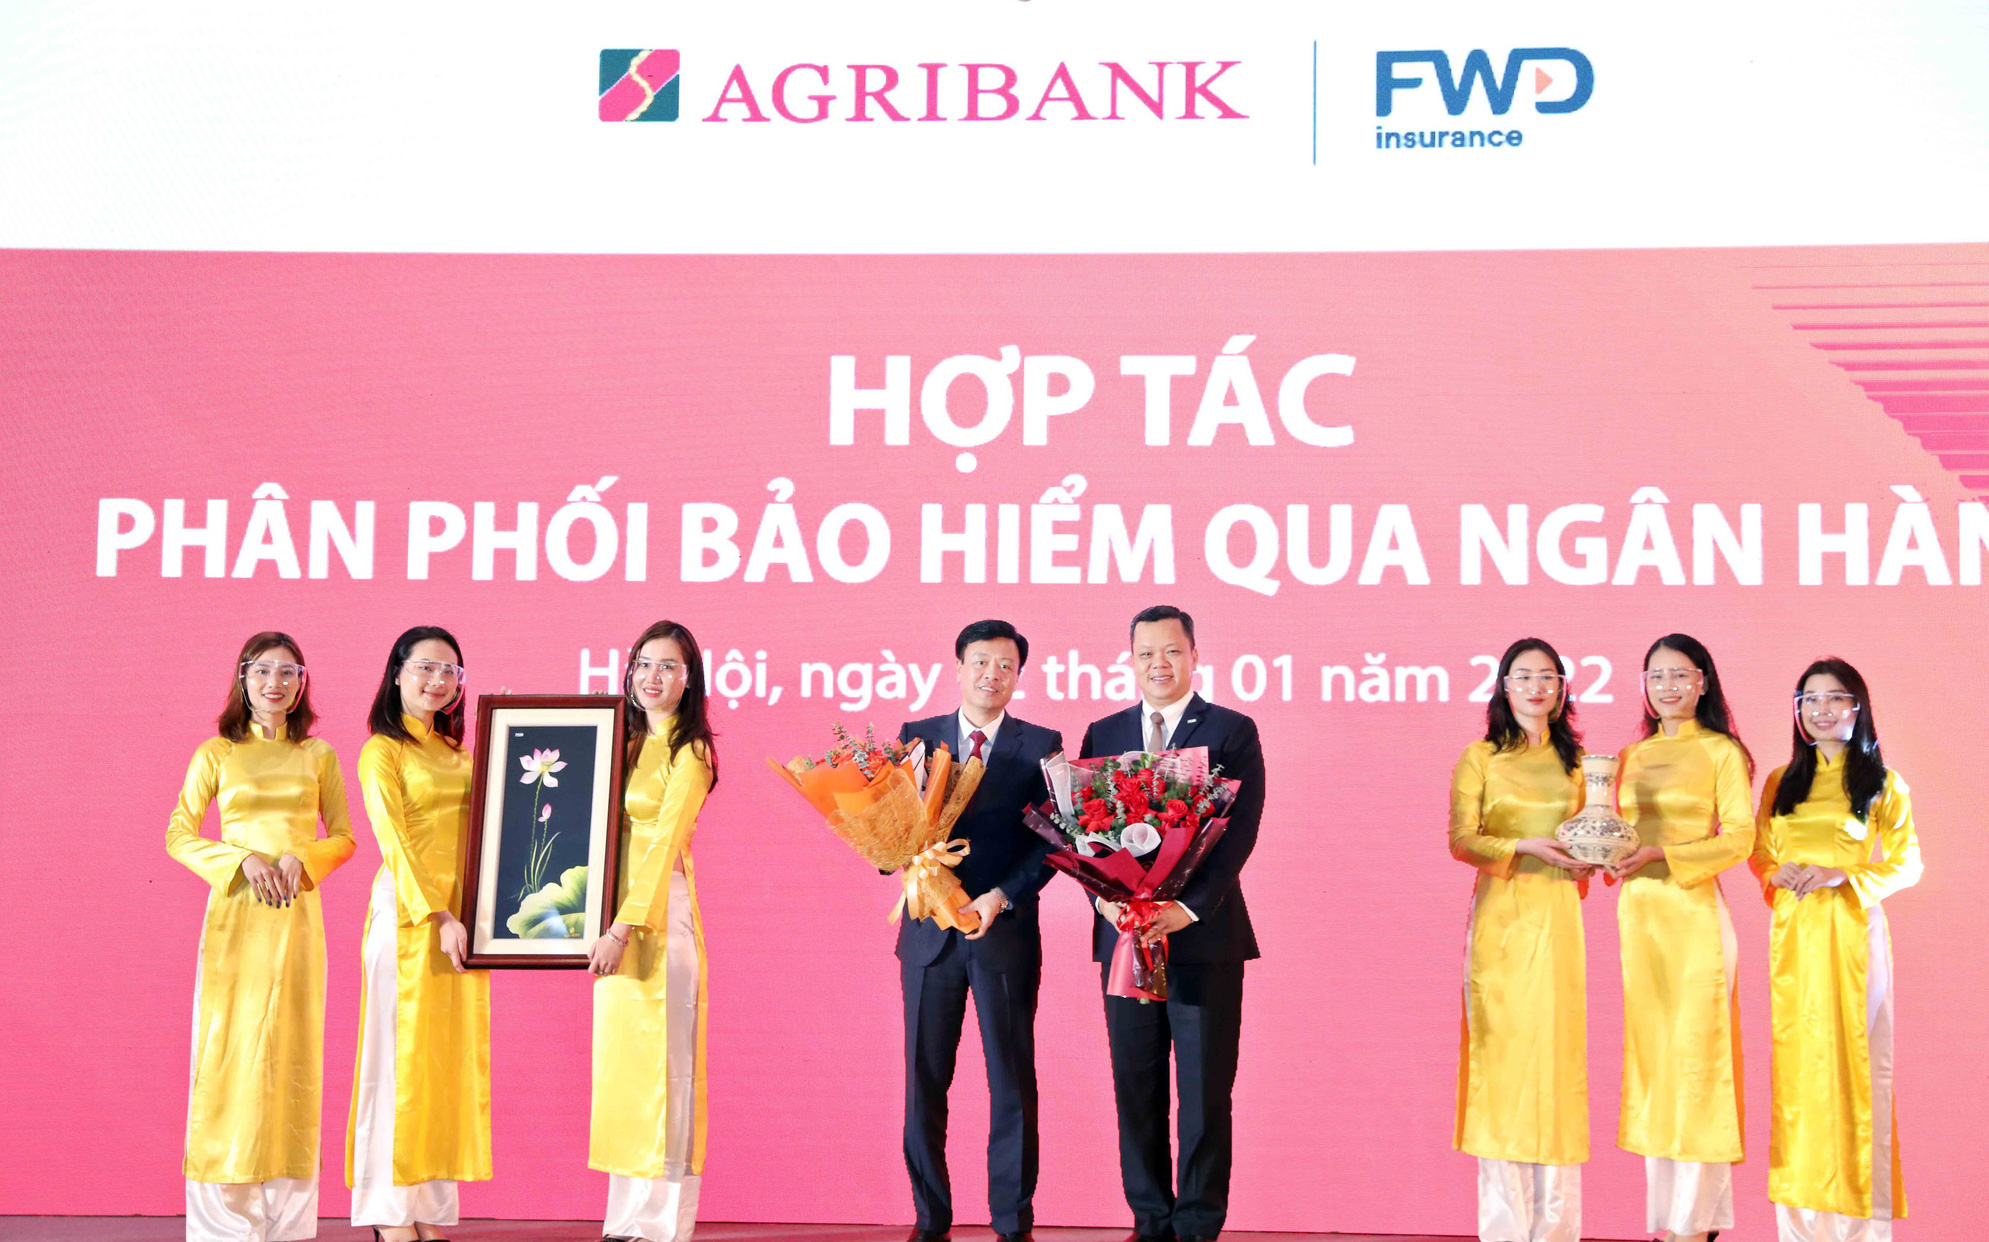 FWD Việt Nam triển khai hợp tác phân phối bảo hiểm qua ngân hàng